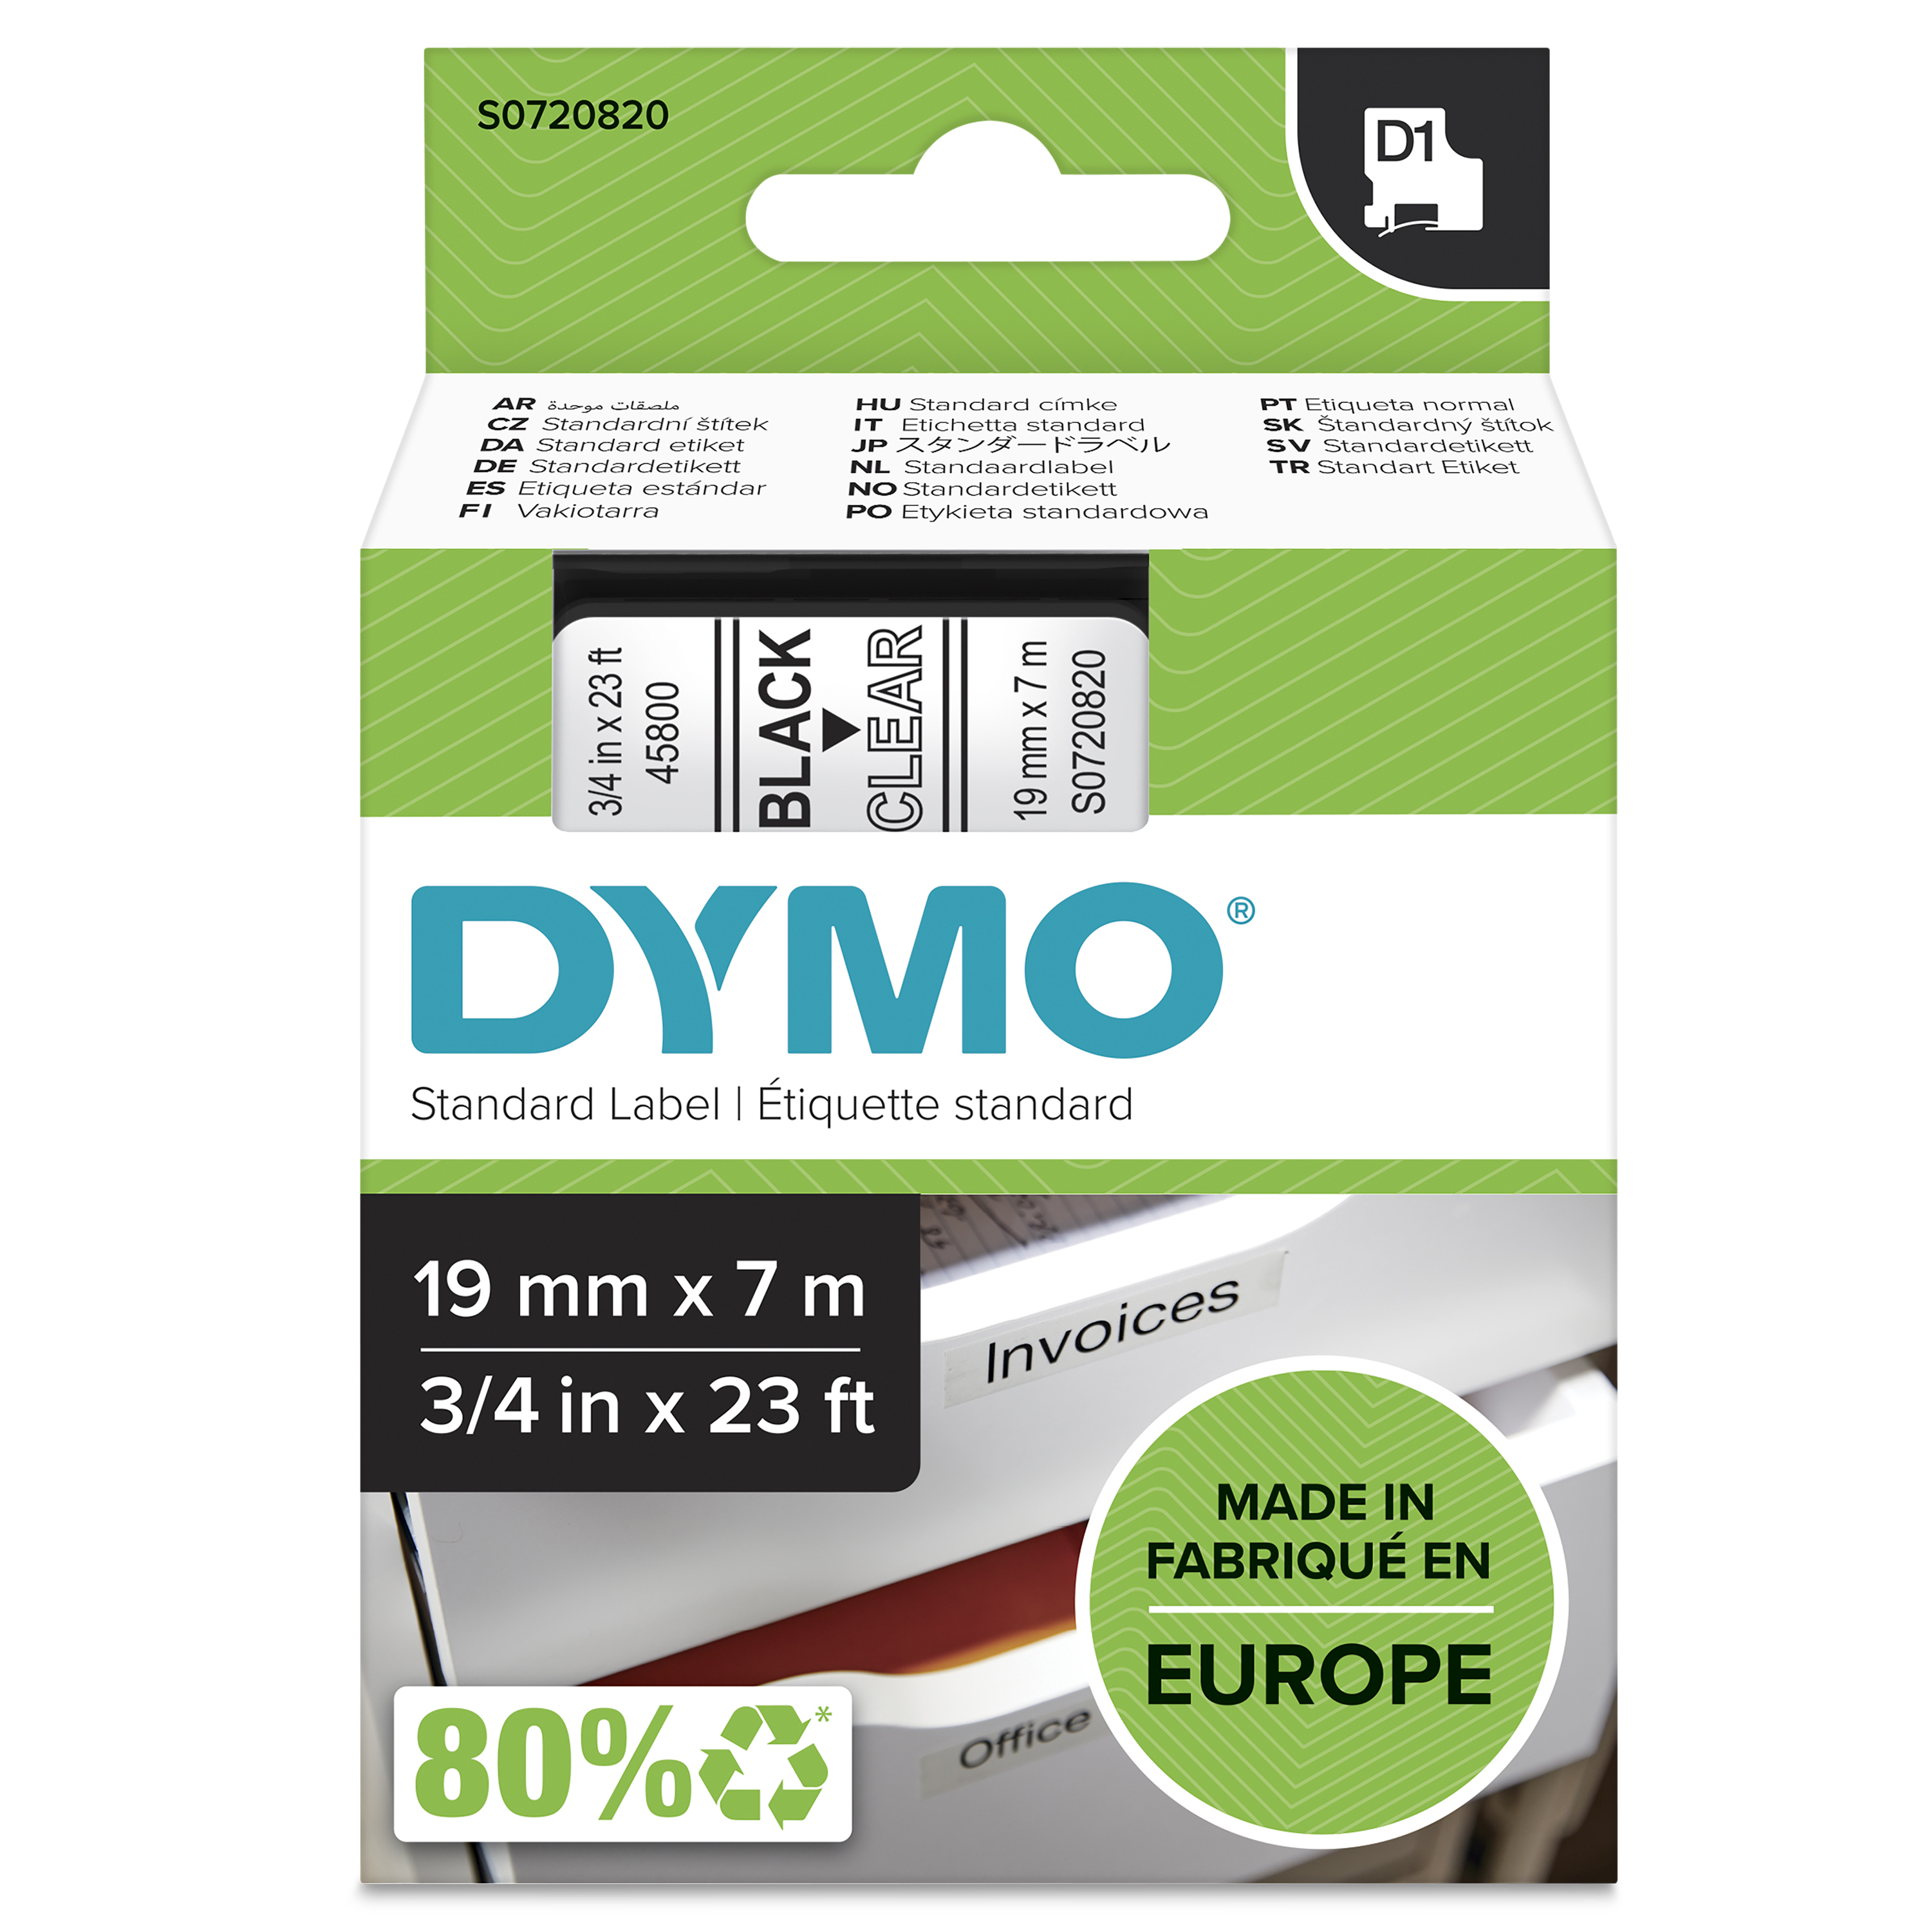 DYMO | Original D1-Schriftband für LabelManager | Polyester | wieder ablösbar | schwarz auf transparent | 19mmx7m